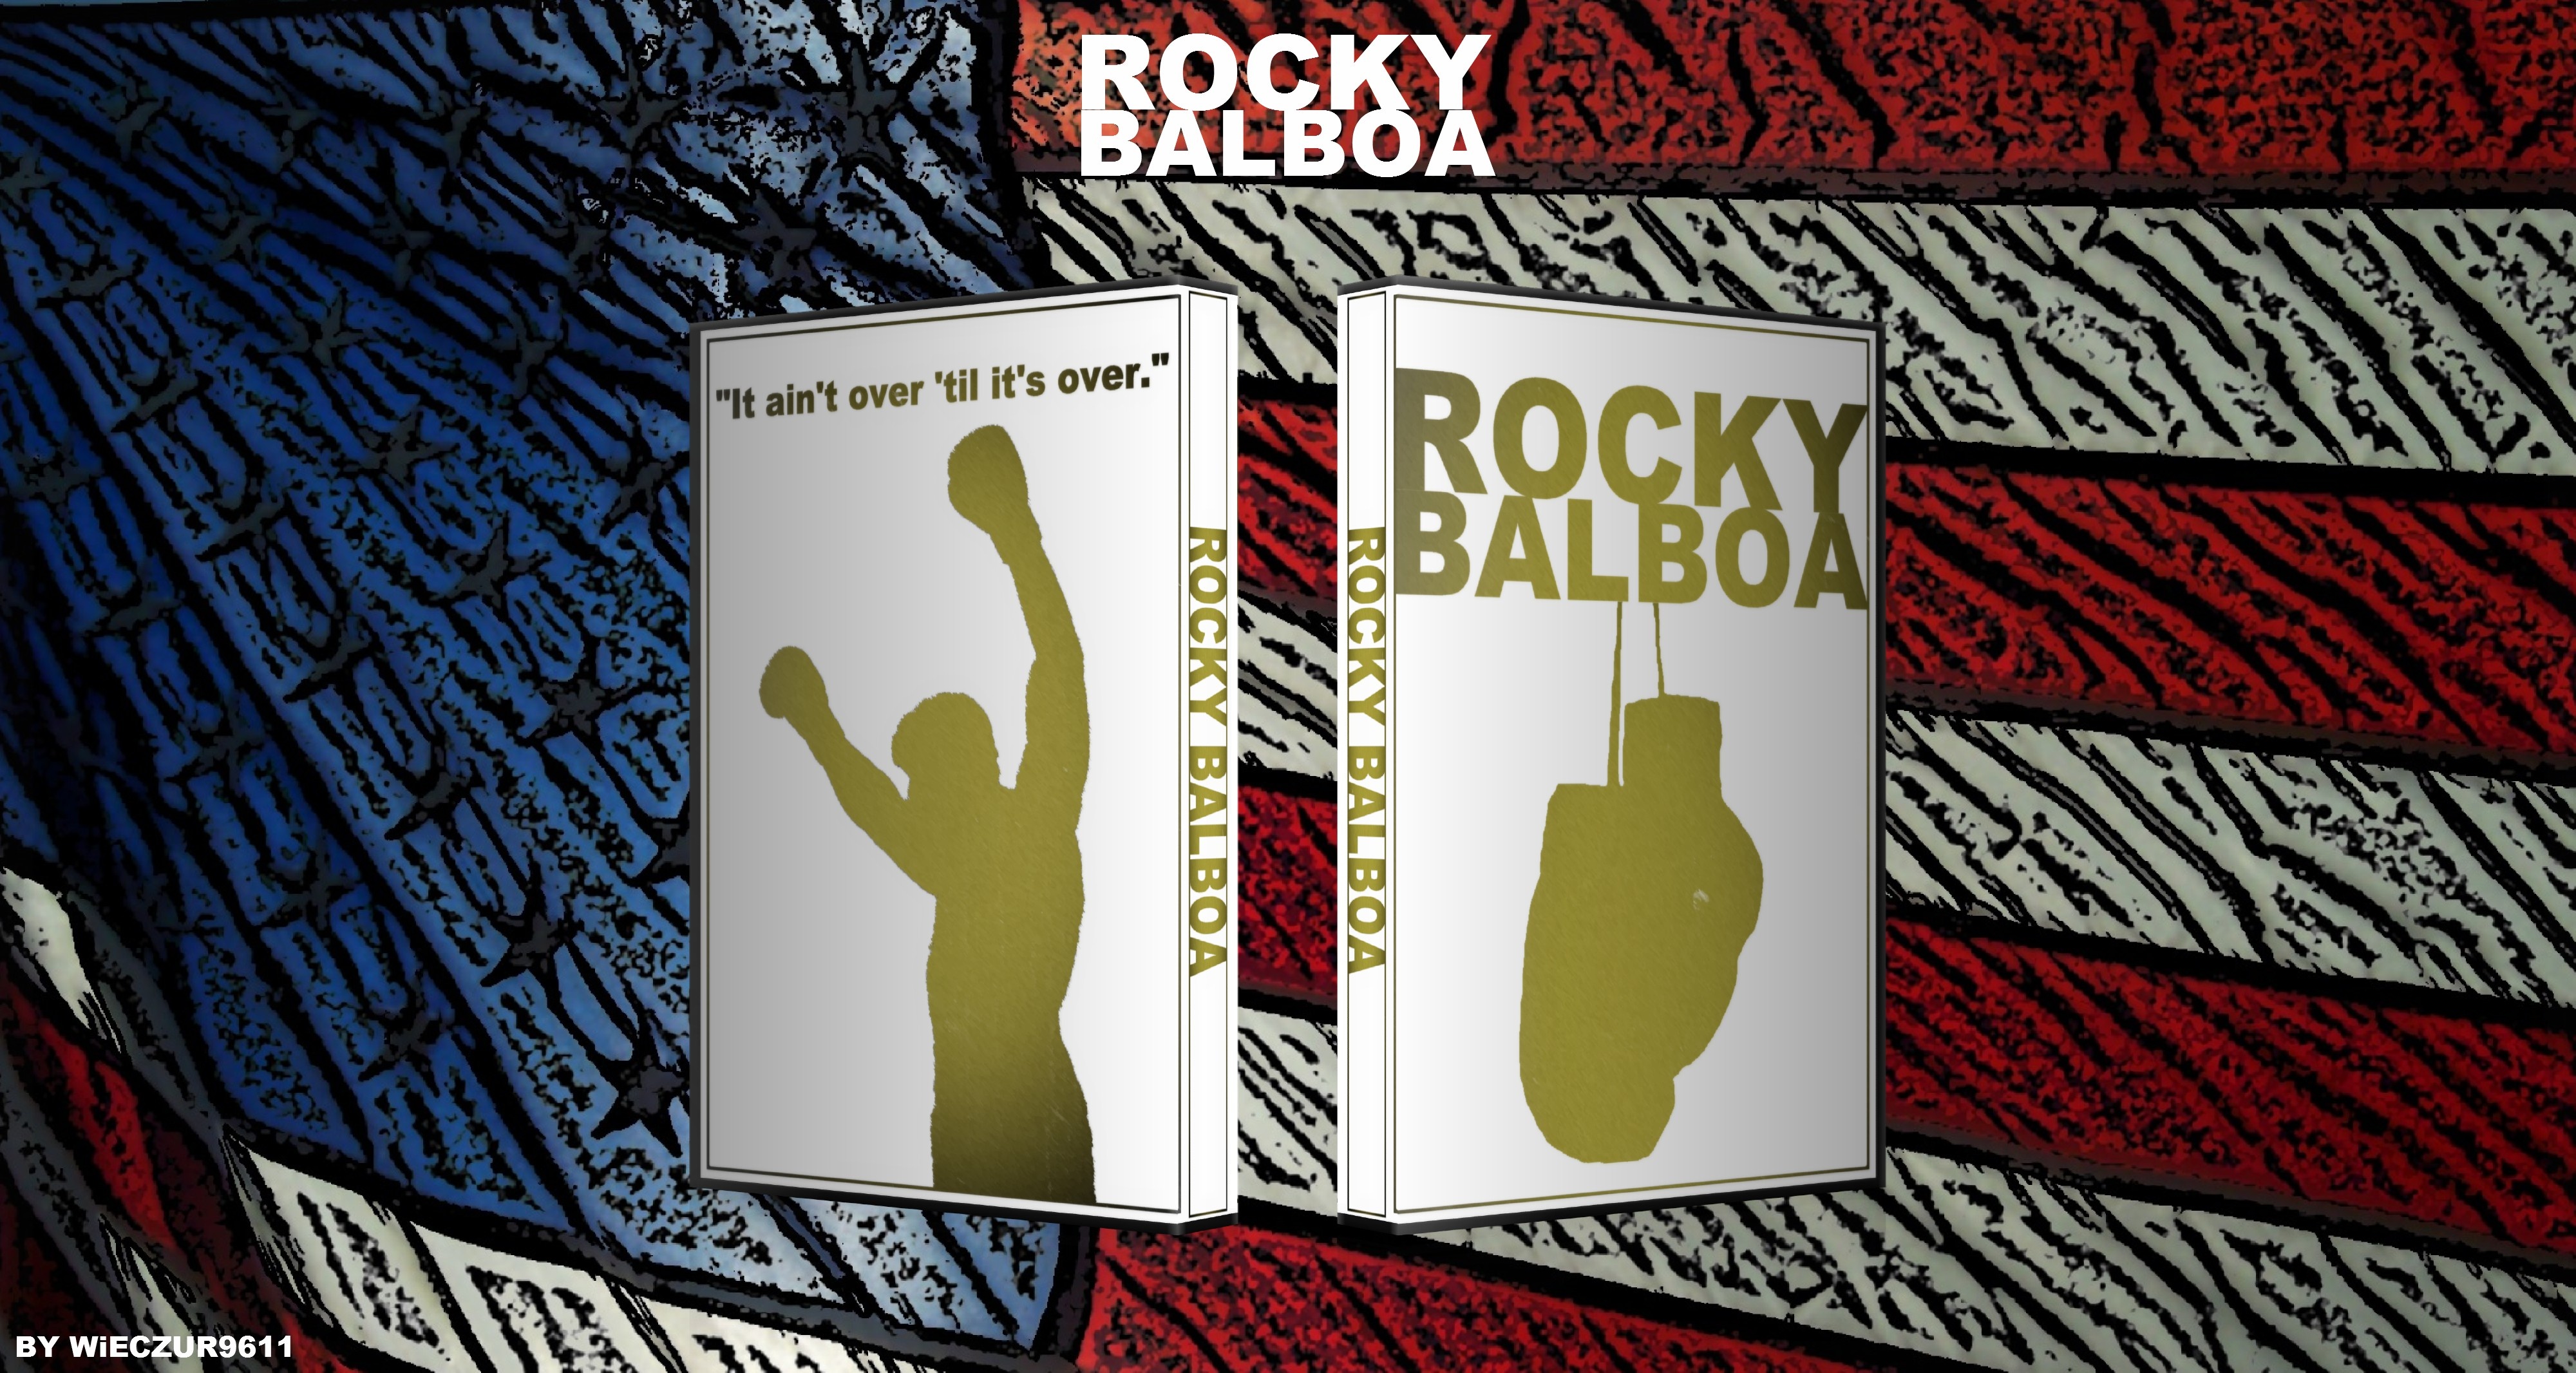 Rocky Balboa box cover